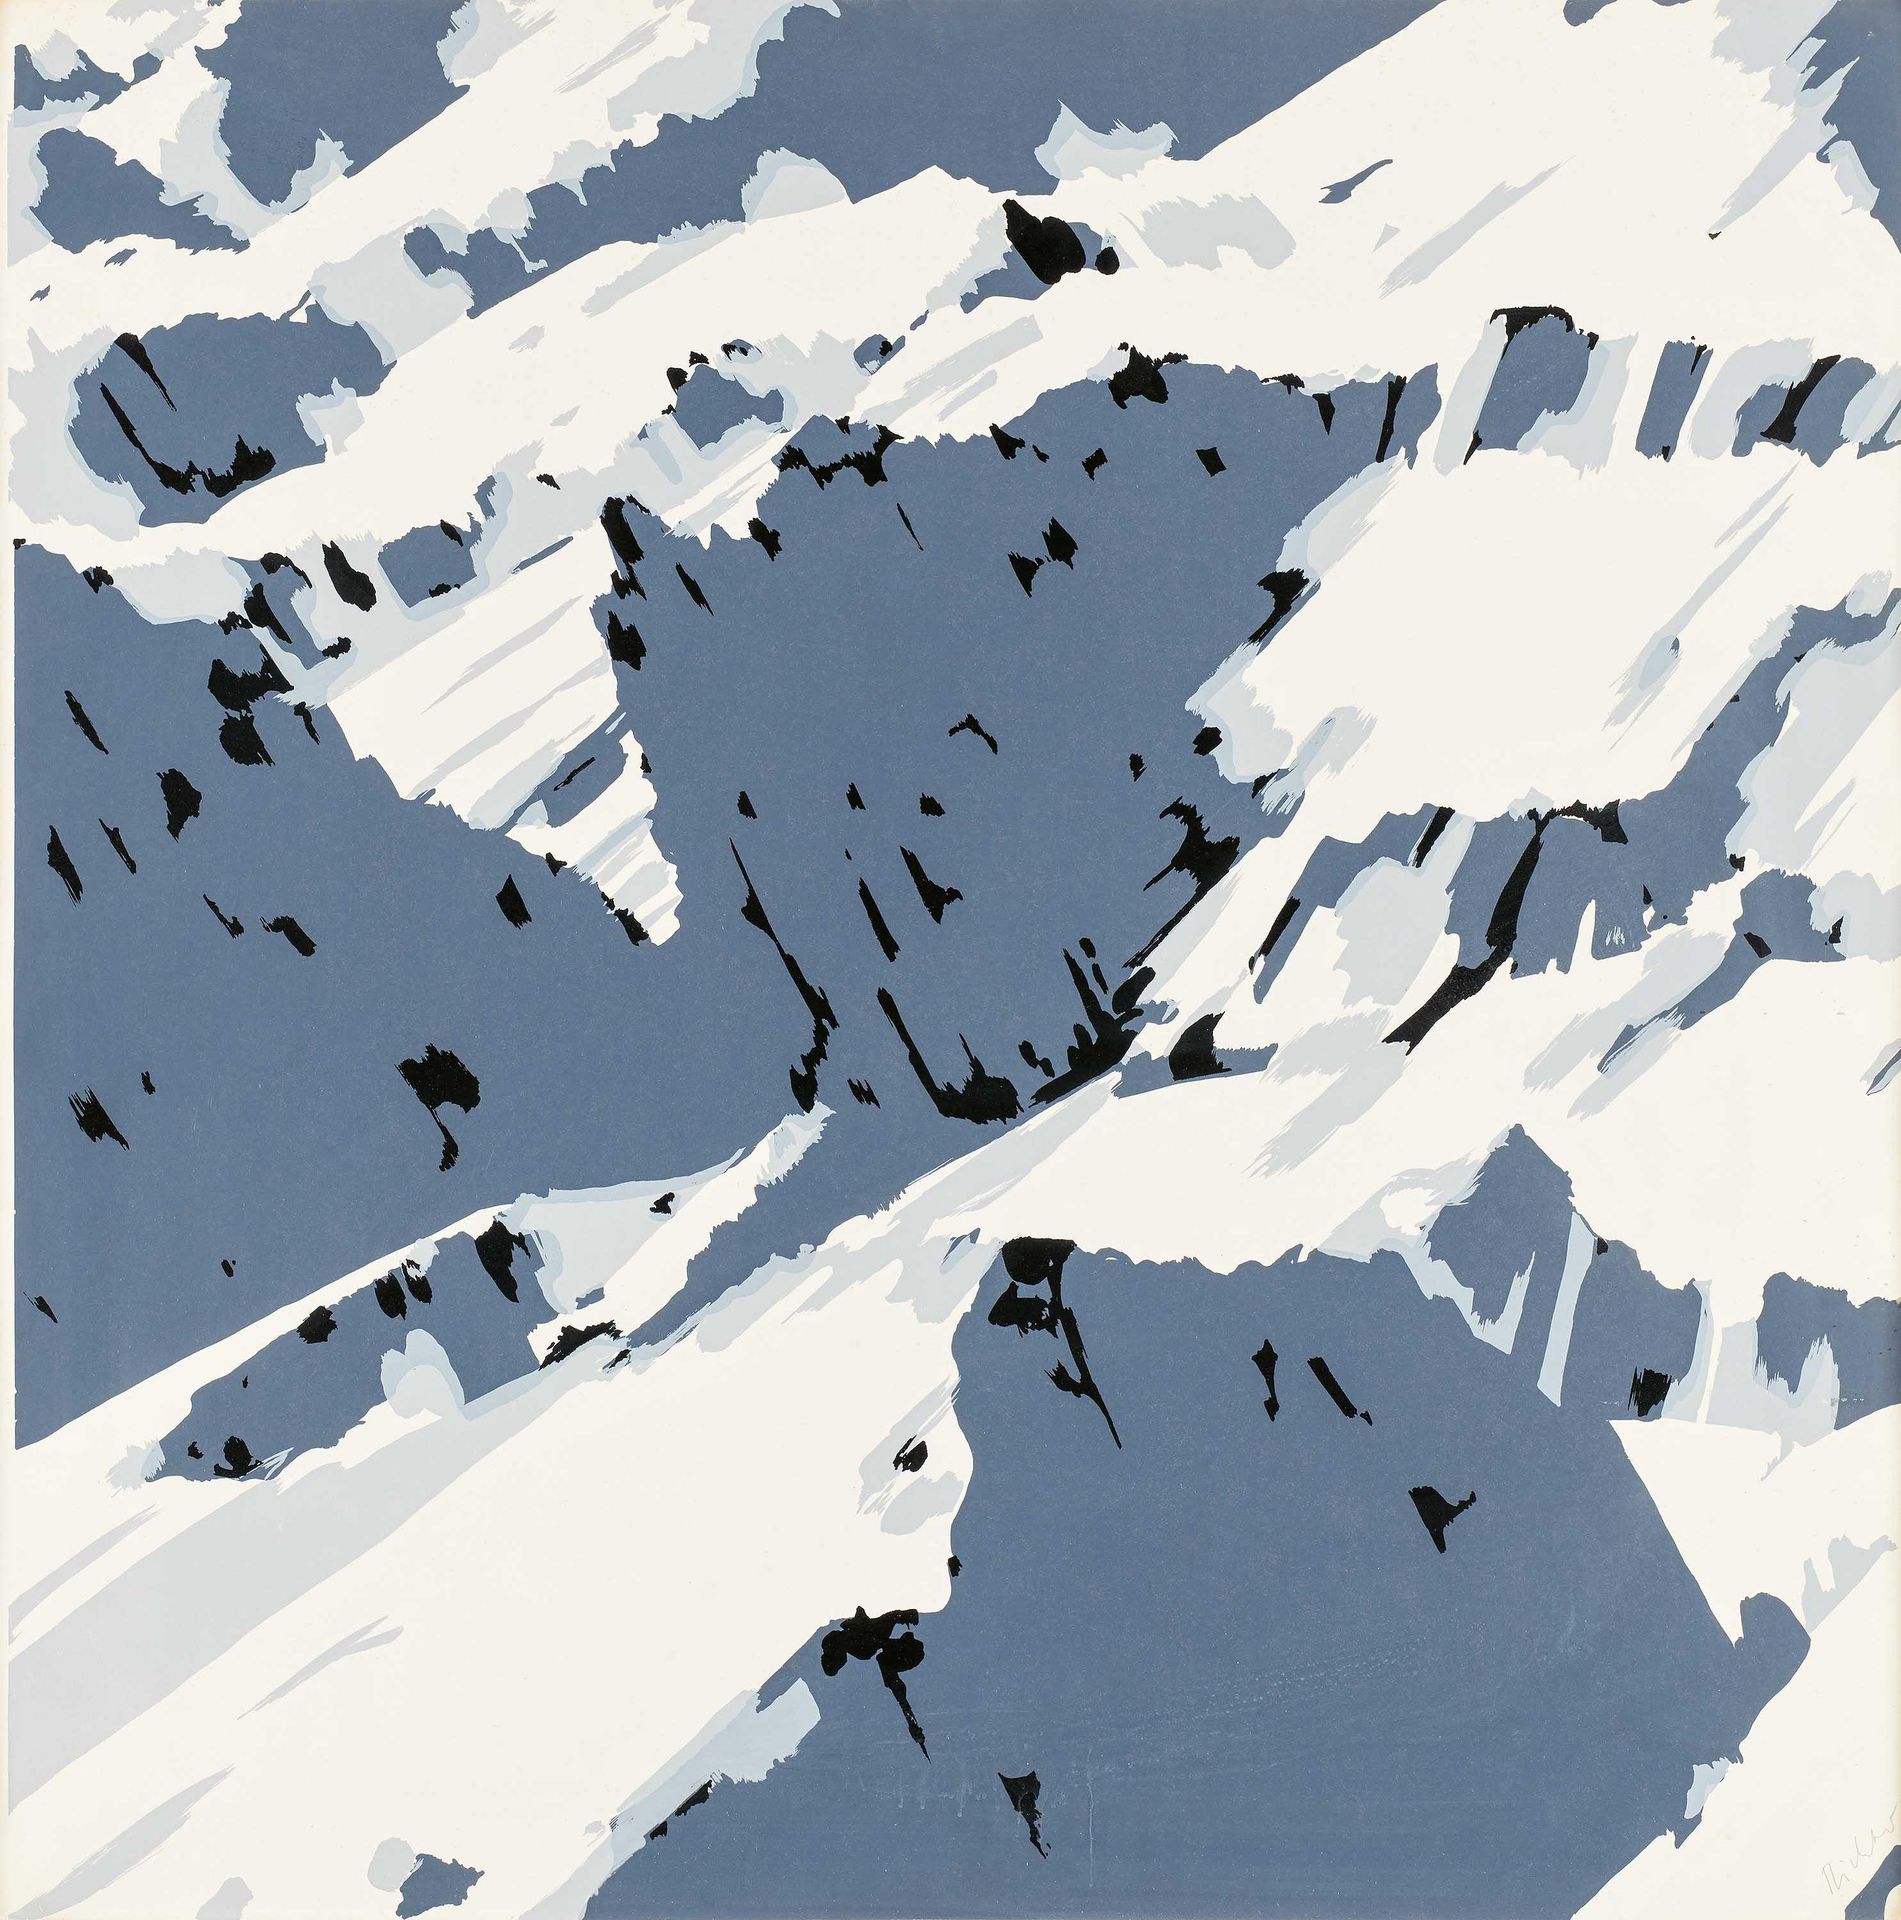 Gerhard Richter Richter, Gerhard
1932年 德累斯顿

标题：Schweizer Alpen I (B1)。 
日期：1969&hellip;